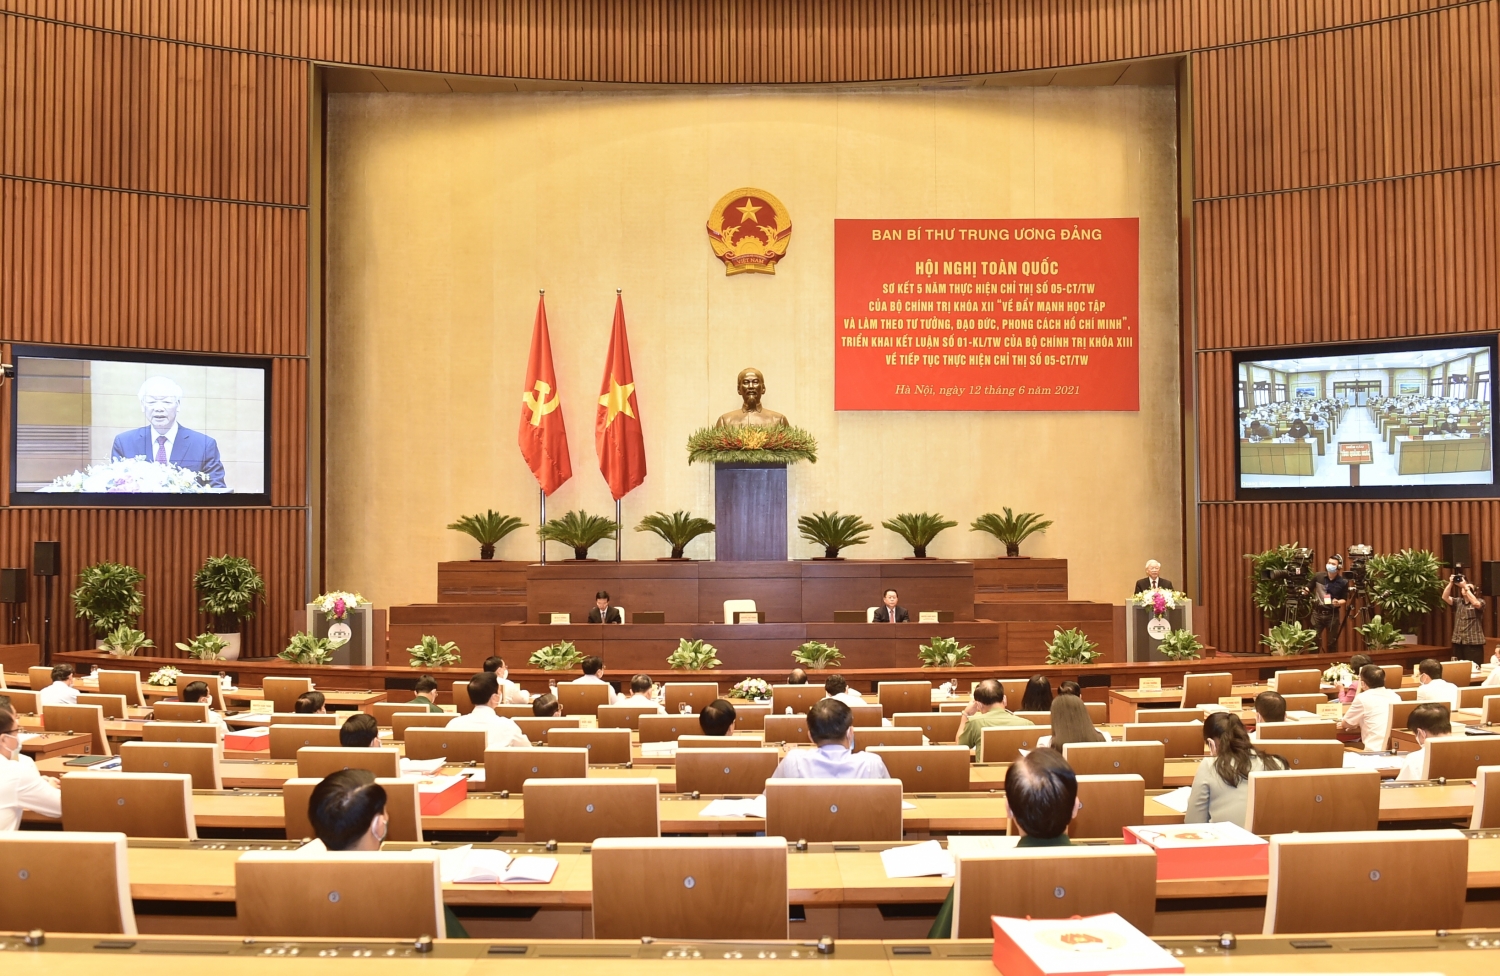 Hội nghị trực tuyến toàn quốc sơ kết 5 năm thực hiện Chỉ thị 05-CT/TW của Bộ Chính trị khóa XII, triển khai Kết luận số 01-KL/TW. Ảnh: tuyengiao.vn